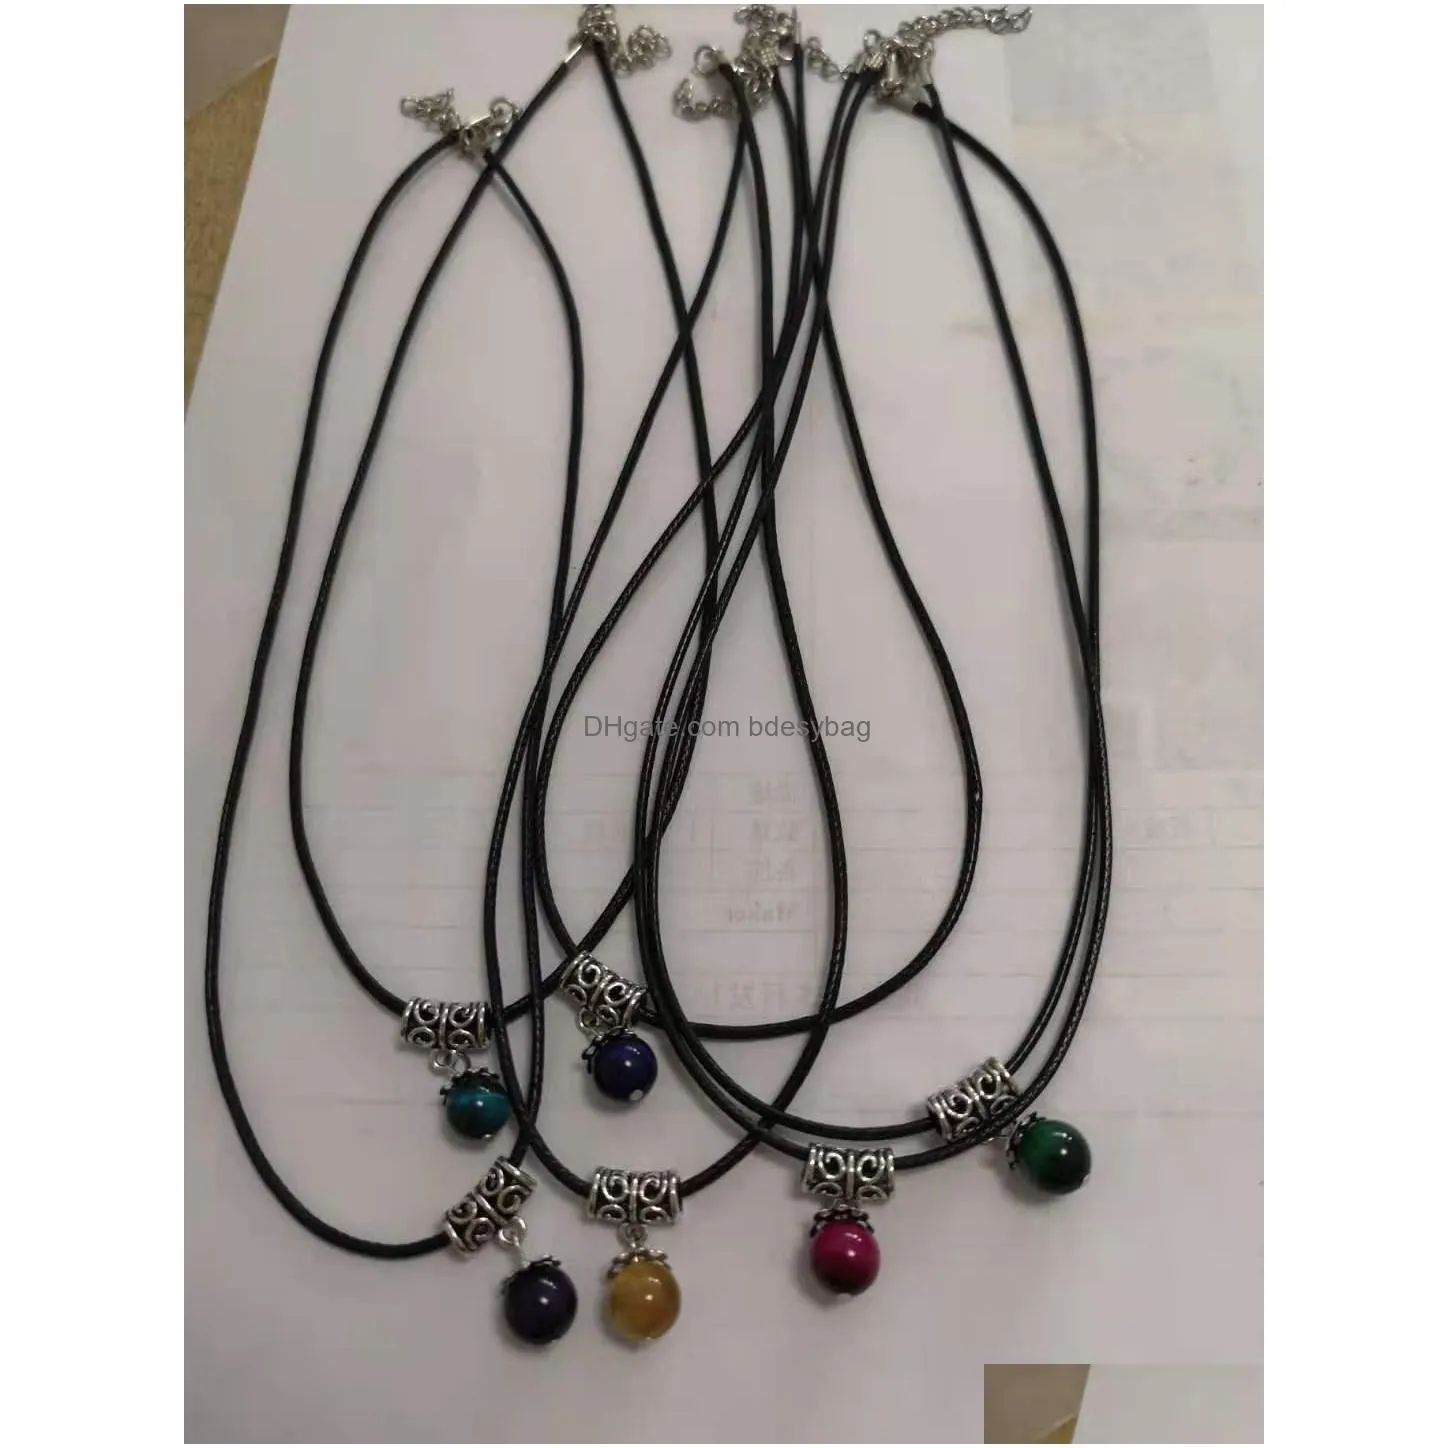 women tiger eye gemstone pendant necklace earrings bracelet set healing stone jewelry set family friend women gift